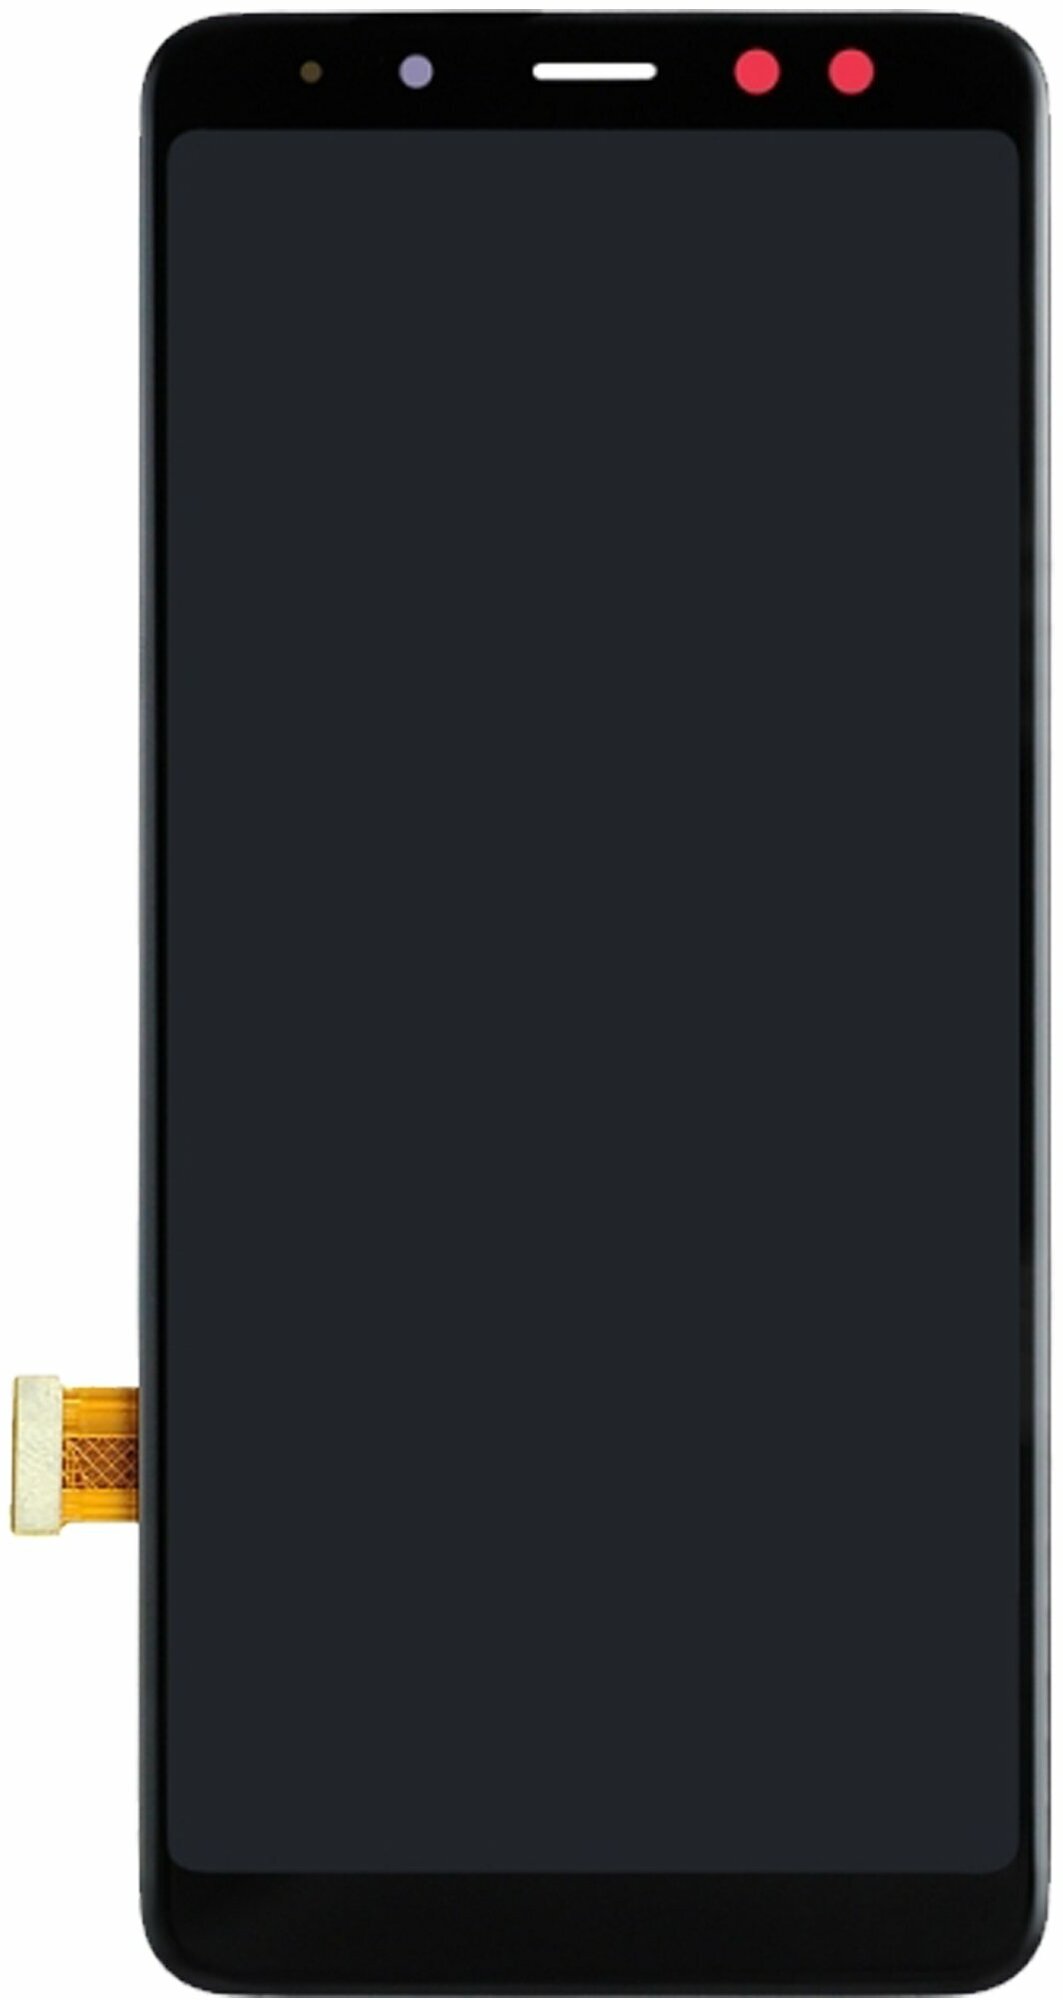 Дисплей с тачскрином для Samsung Galaxy A8 (2018) A530F (черный) OLED